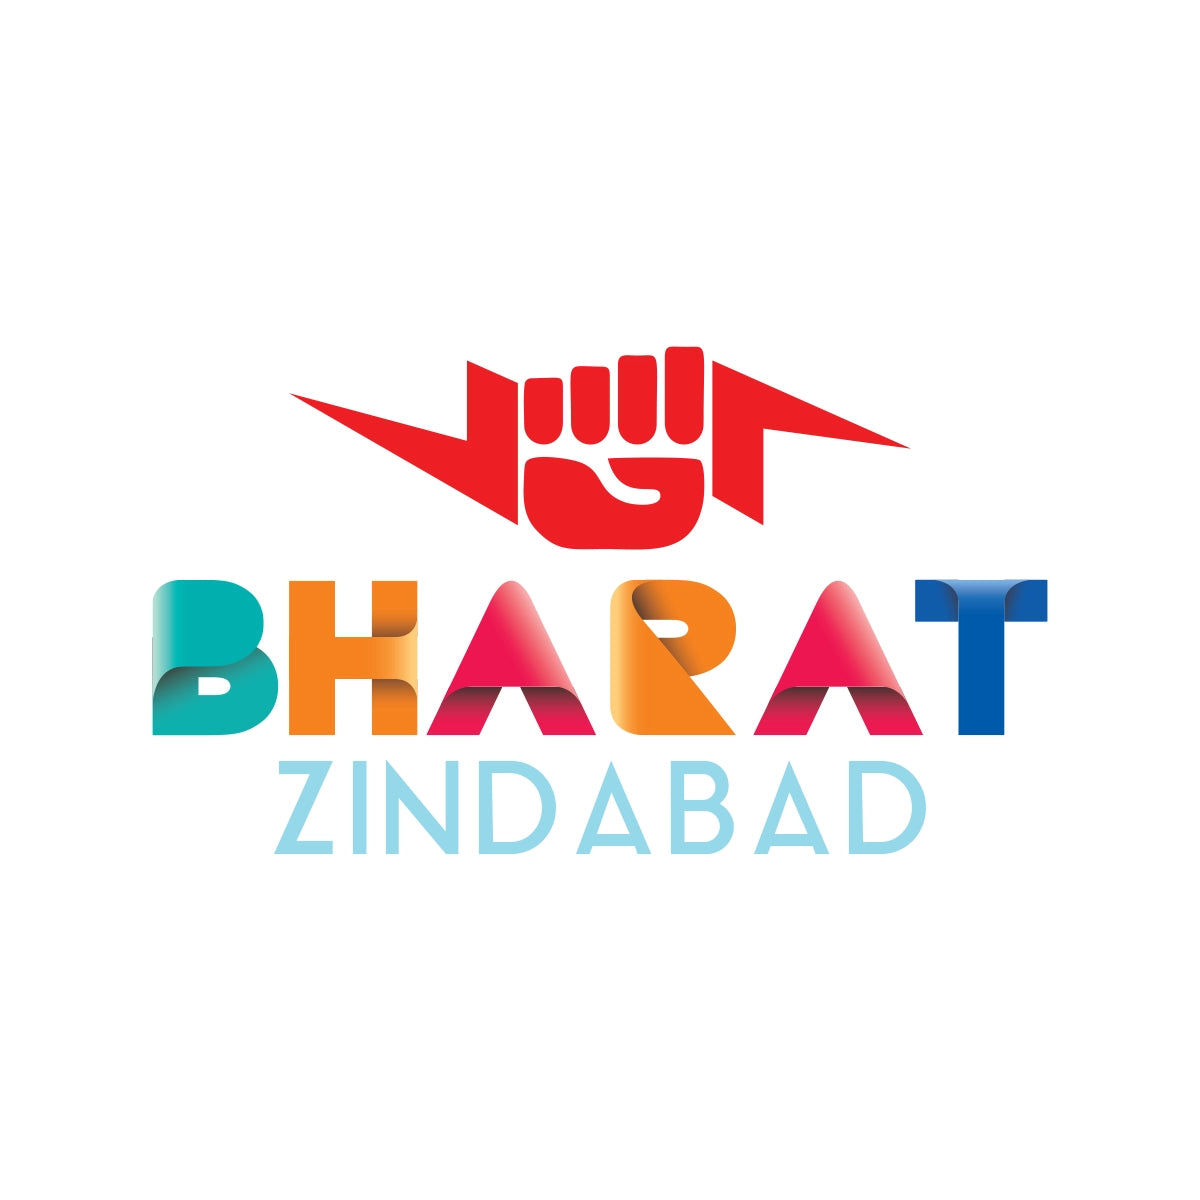 bharatzindabad.com